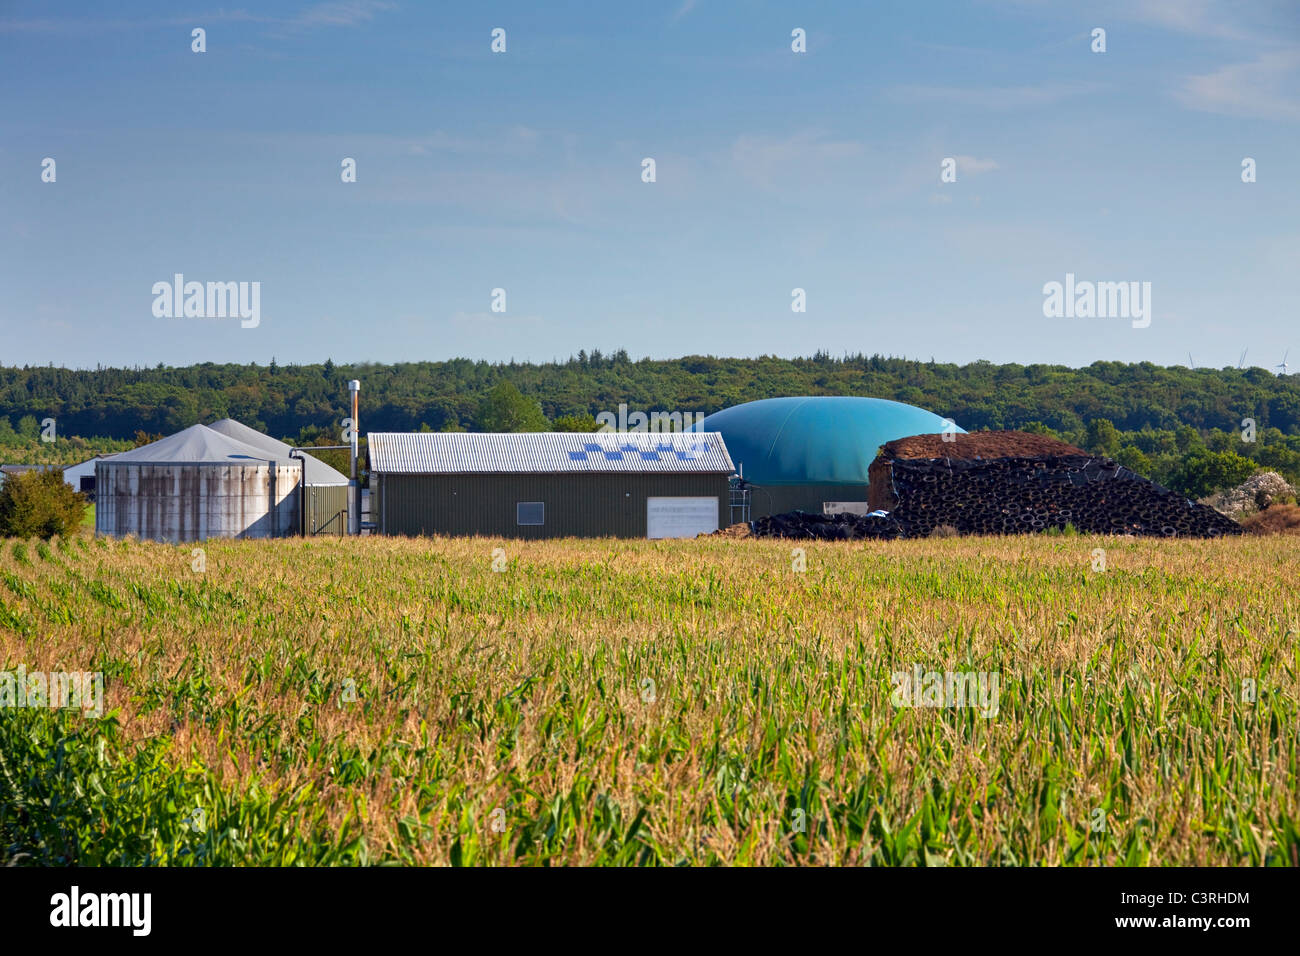 Azienda Agricola a base di insilato di mais digestore anaerobico impianto per la produzione di biocarburanti, Germania Foto Stock